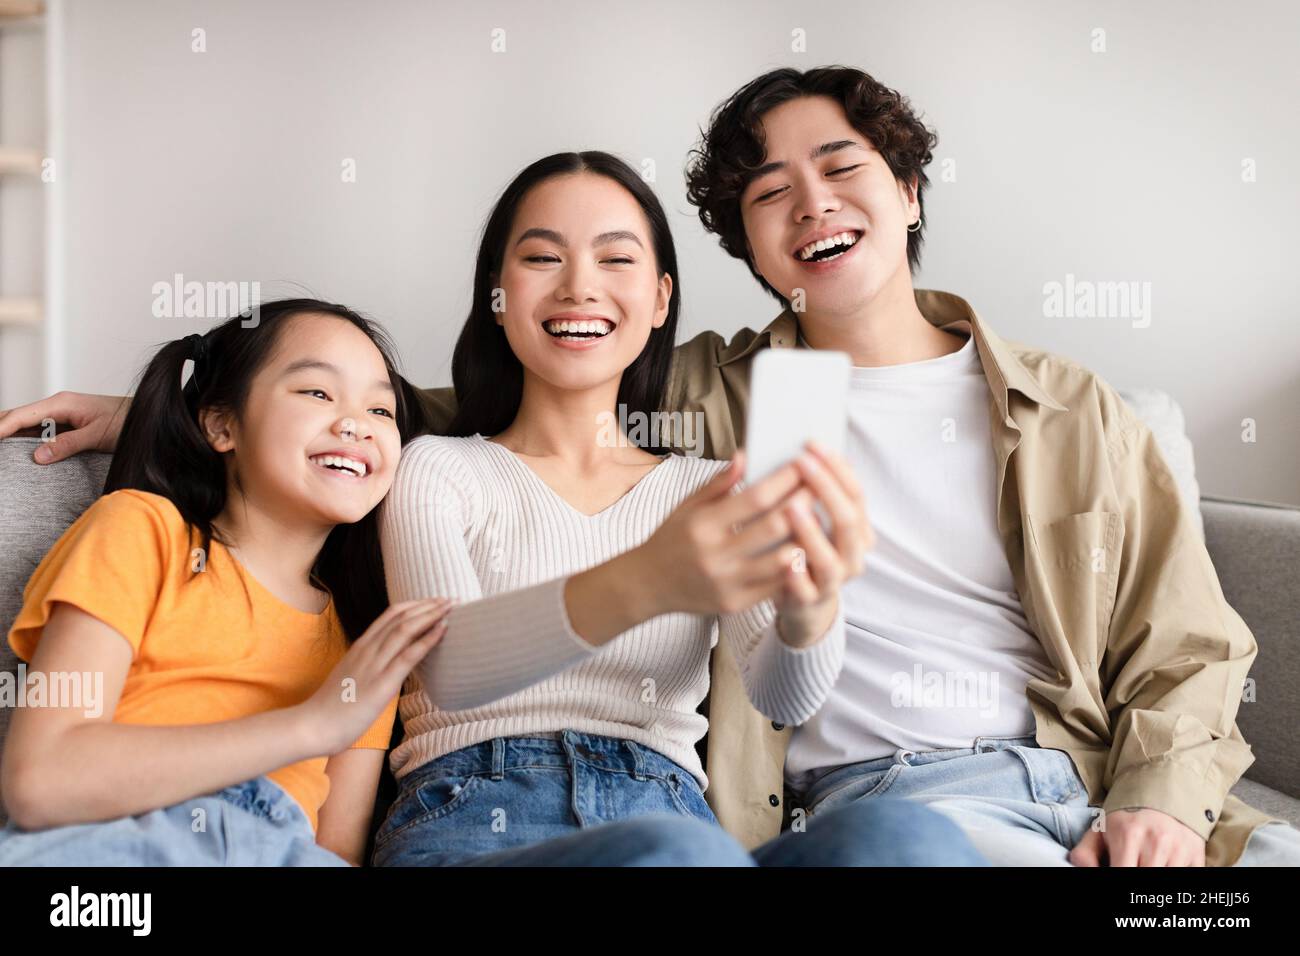 Lachende Jugendliche Asiatische Mädchen, junge Mutter und Vater machen Familie Selfie auf dem Smartphone Stockfoto